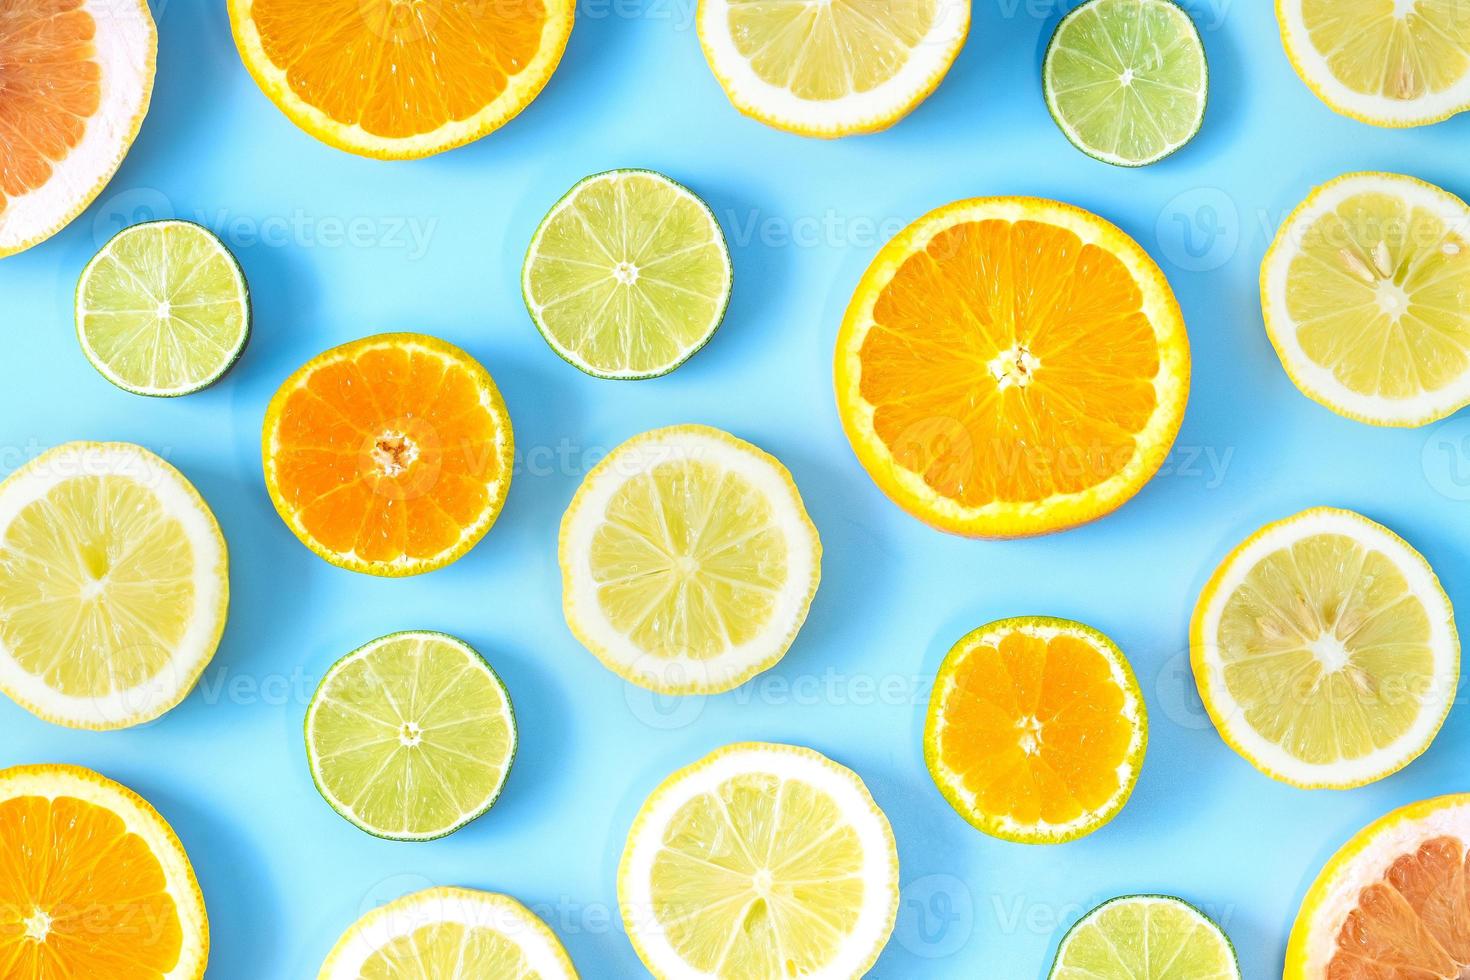 coleção de limão fresco, limão, laranja, frutas cítricas, fatia de toranja sobre fundo azul. foto